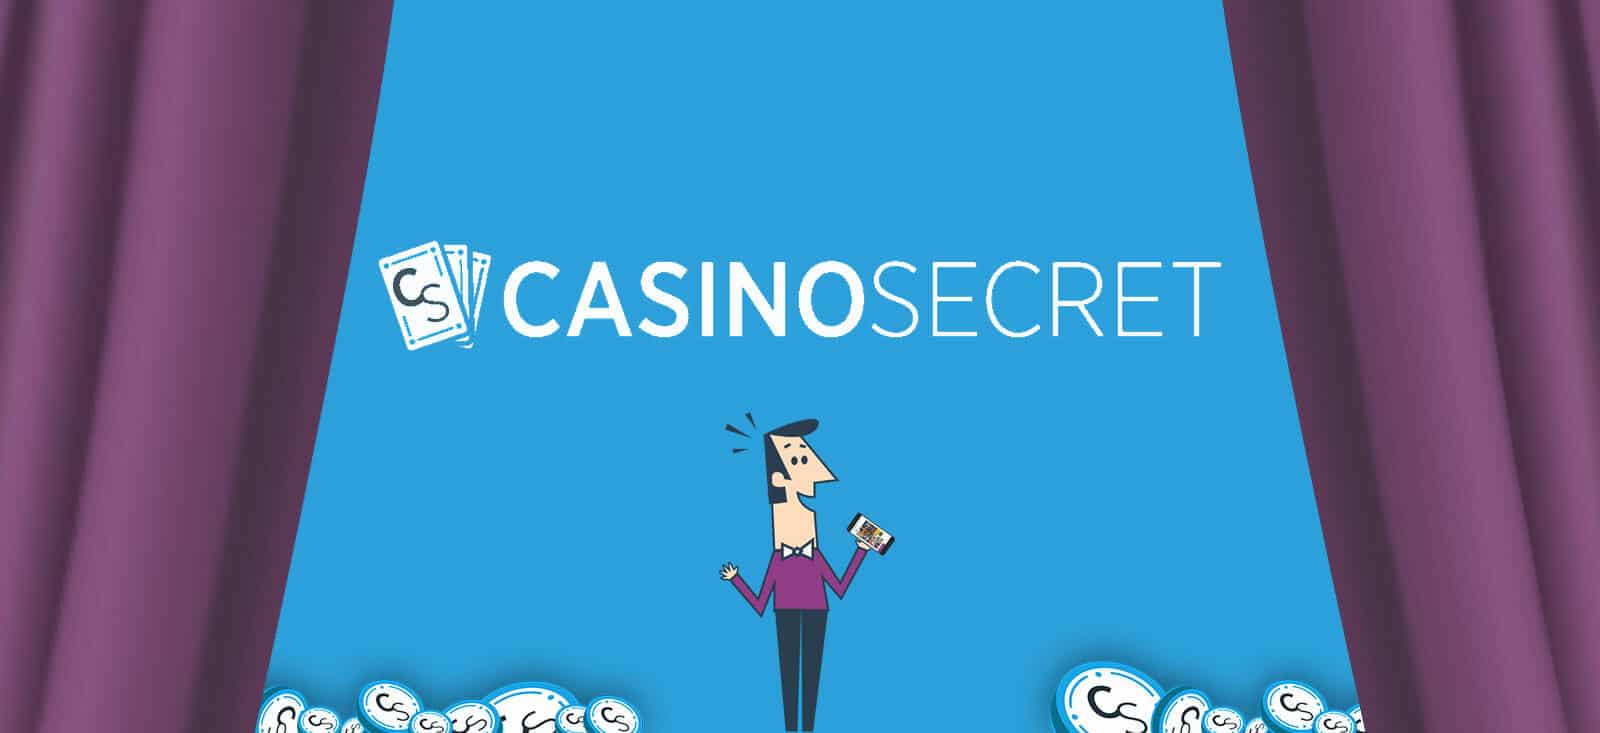 casino-secret-image